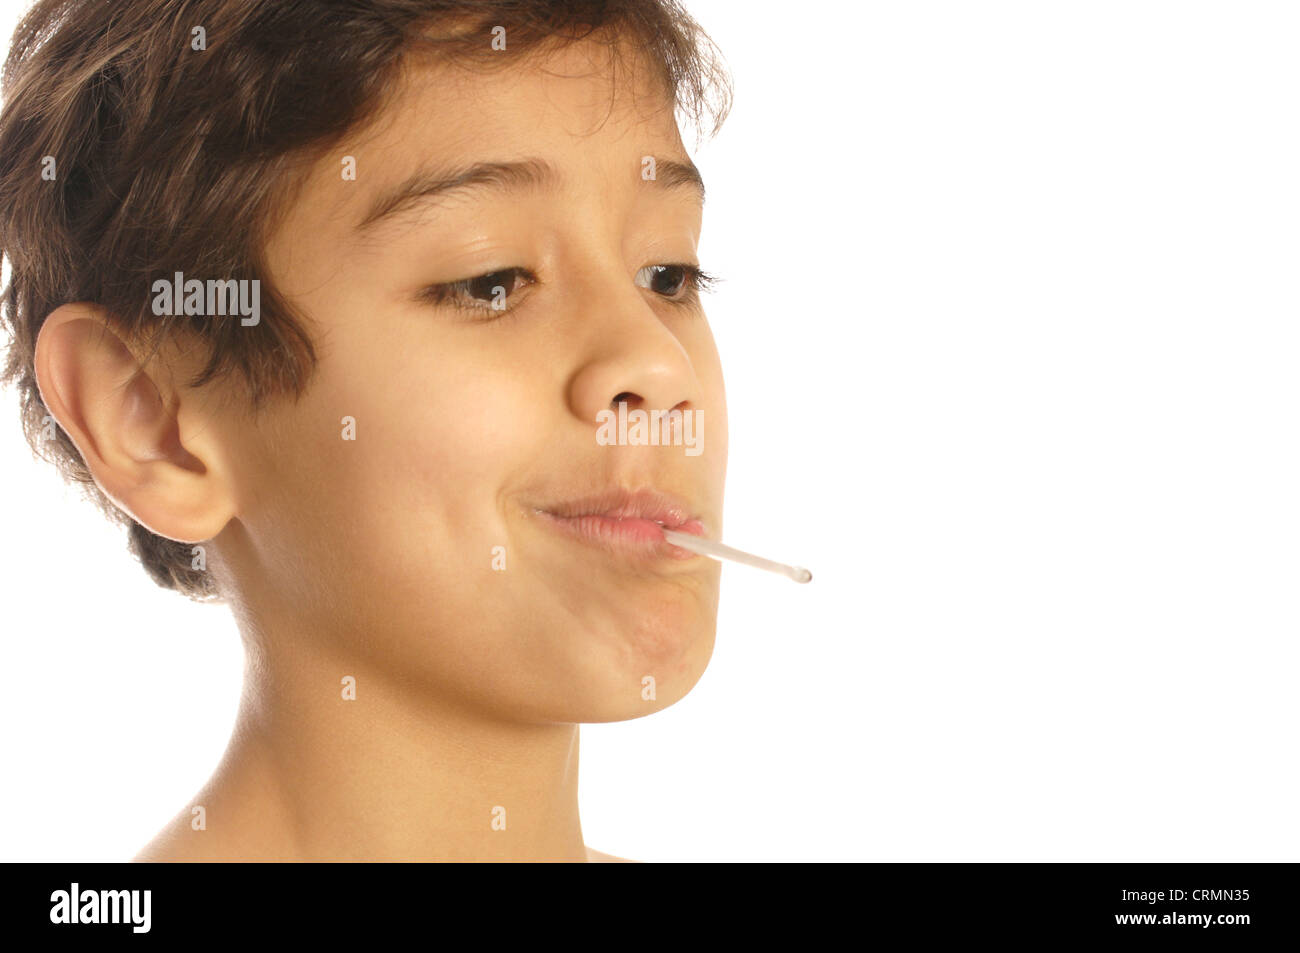 Un giovane ragazzo avente la sua temperatura controllata usando un termometro Foto Stock